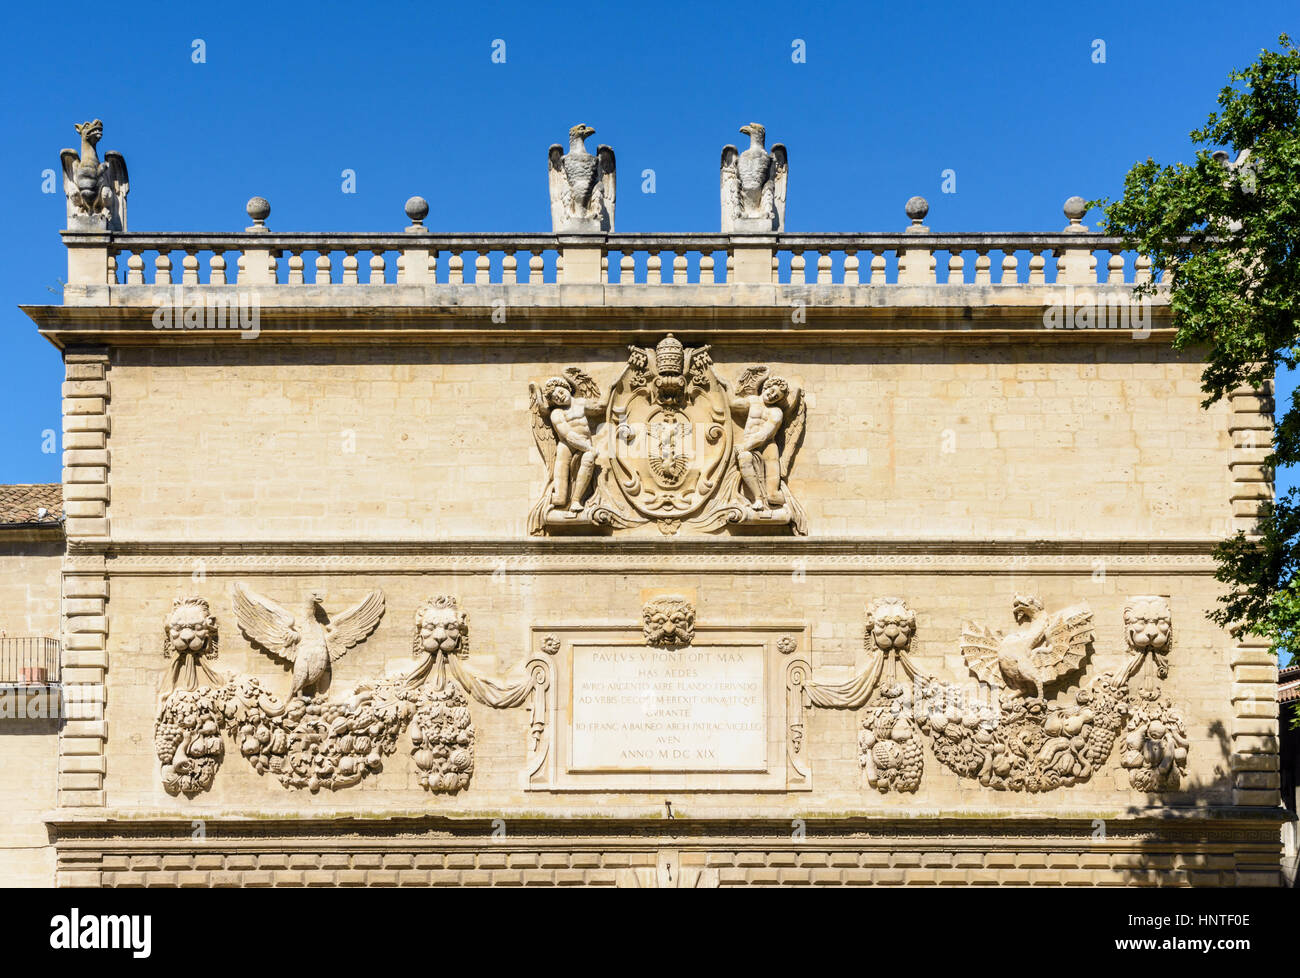 Détail de la façade baroque de la Hotel des Monnaies avec le blason de la famille du Cardinal de Borghèse au-dessus de la plaque de la restauration, Avignon, France Banque D'Images